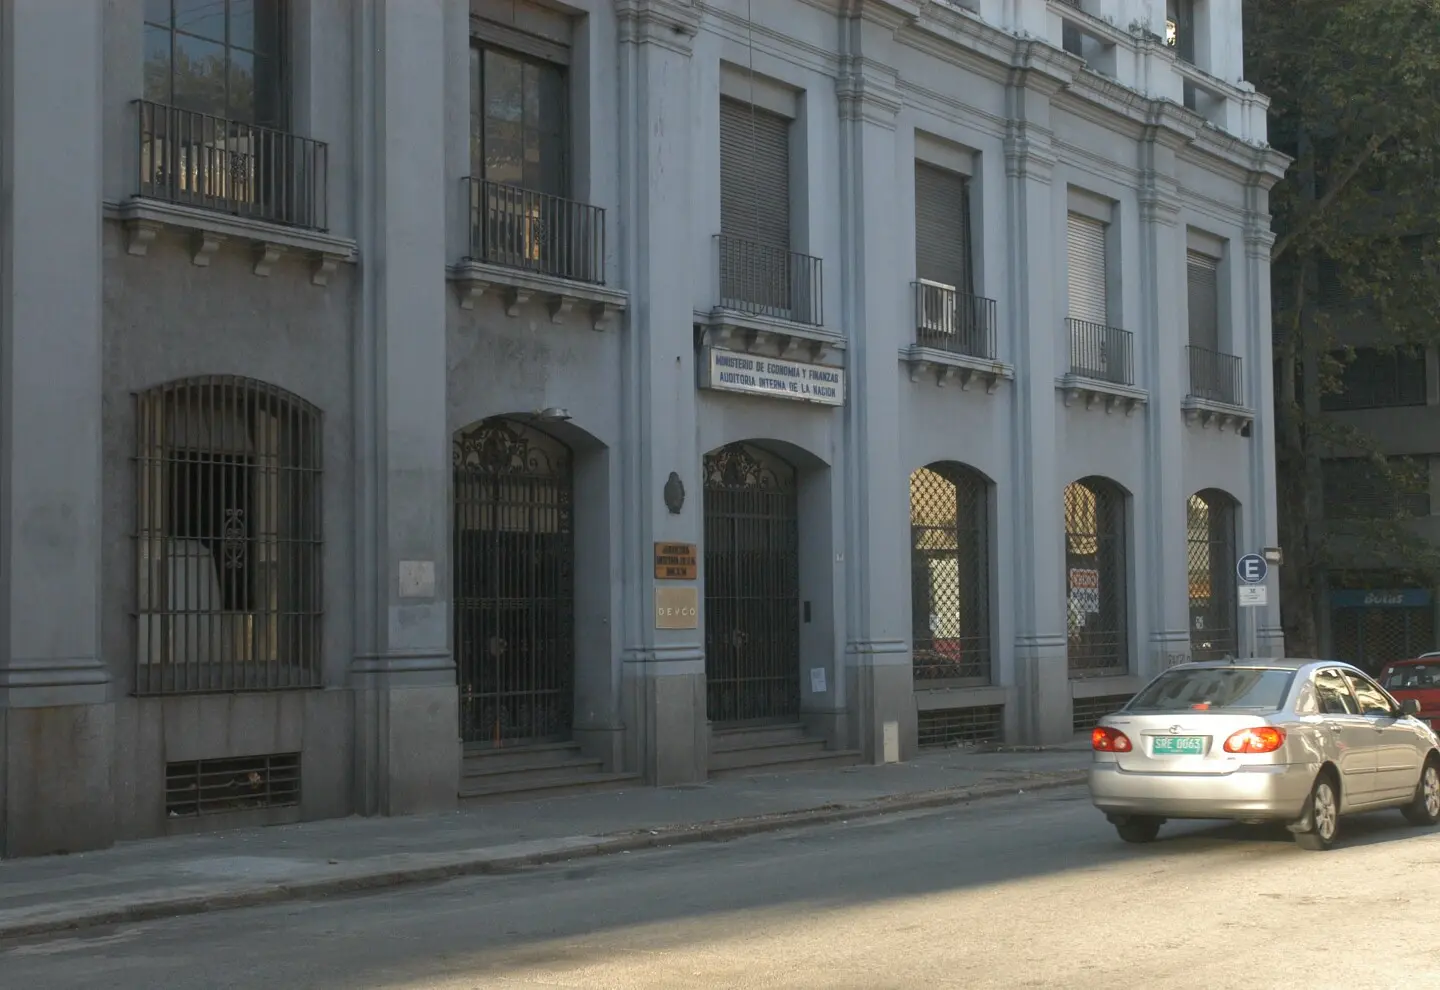 auditoria general de uruguay - Cuánto gana un auditor en Uruguay